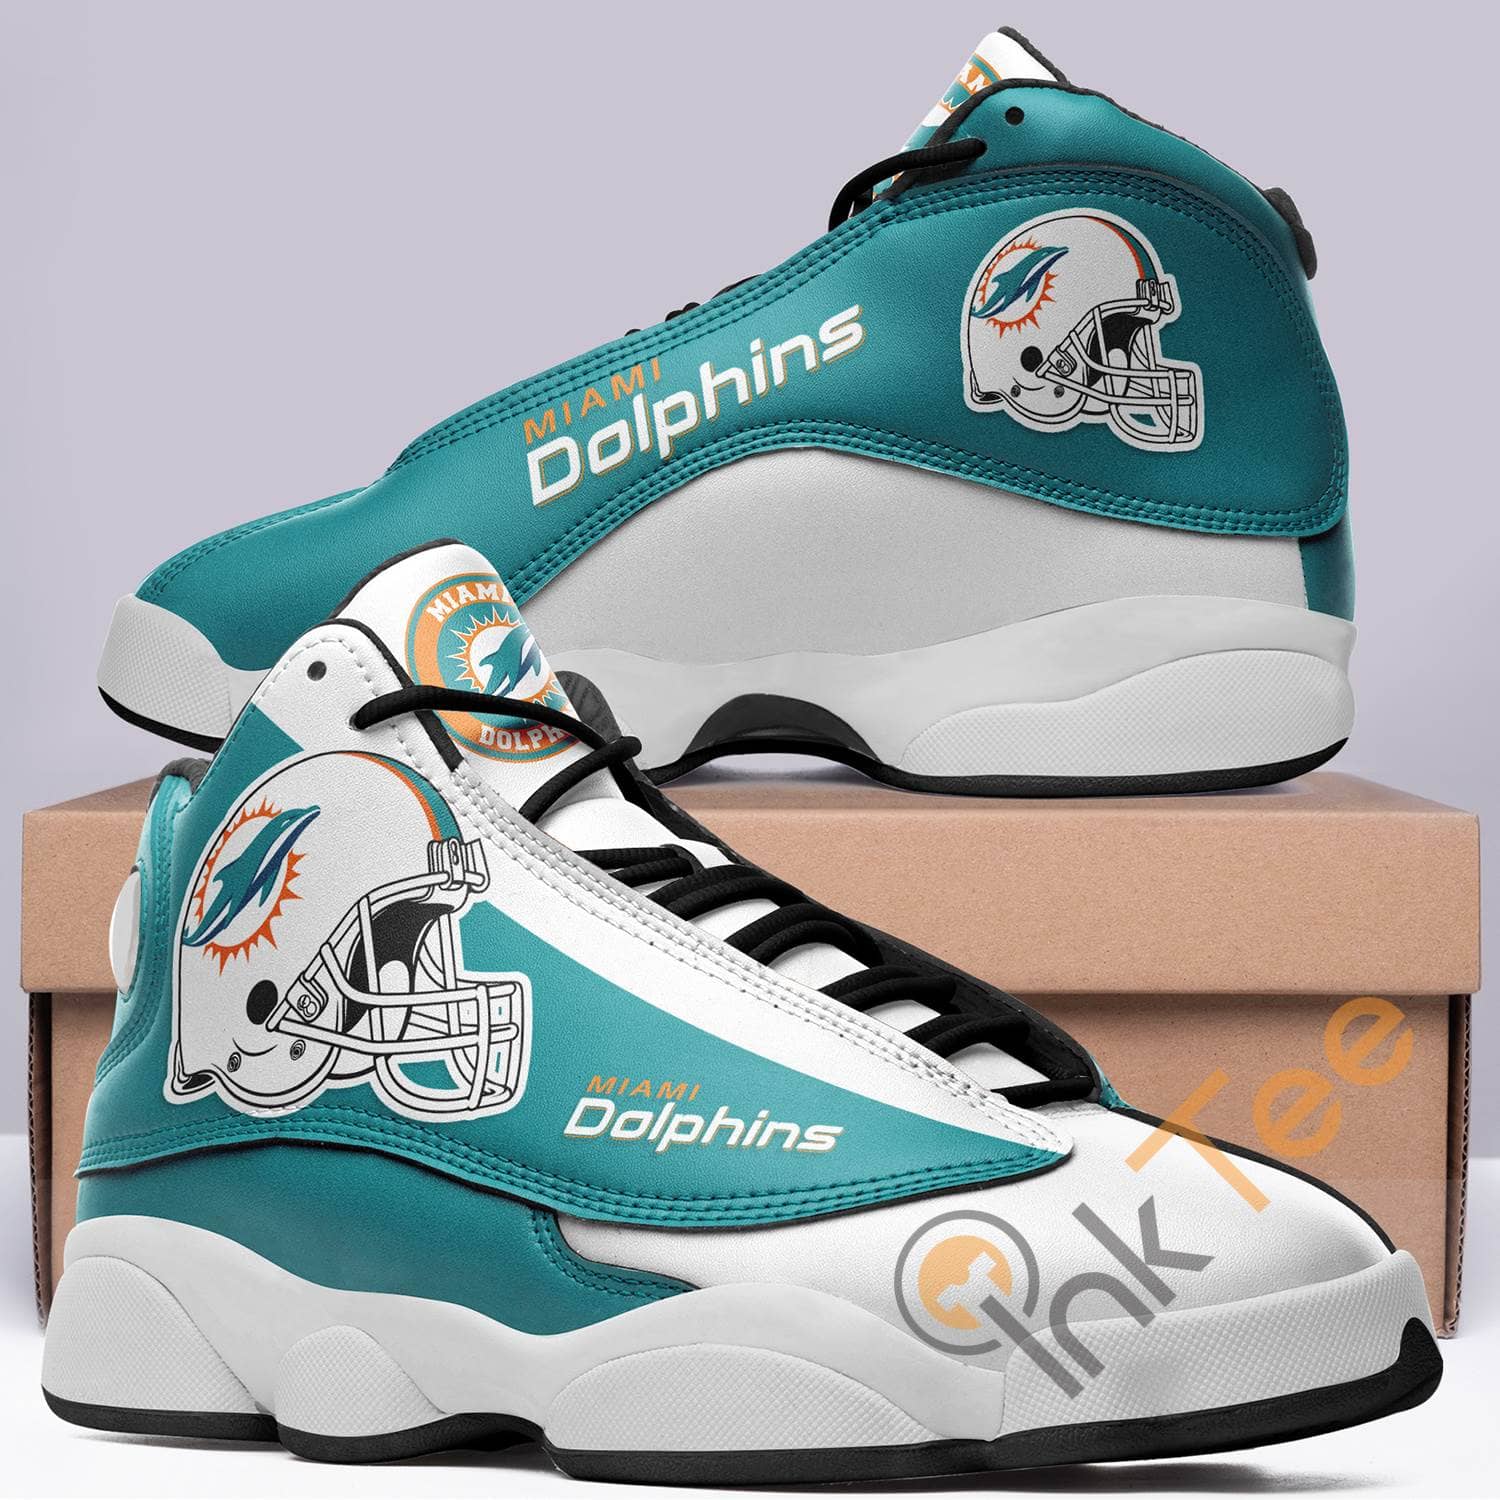 Miami Dolphins Team Logo Air Jordan Shoes